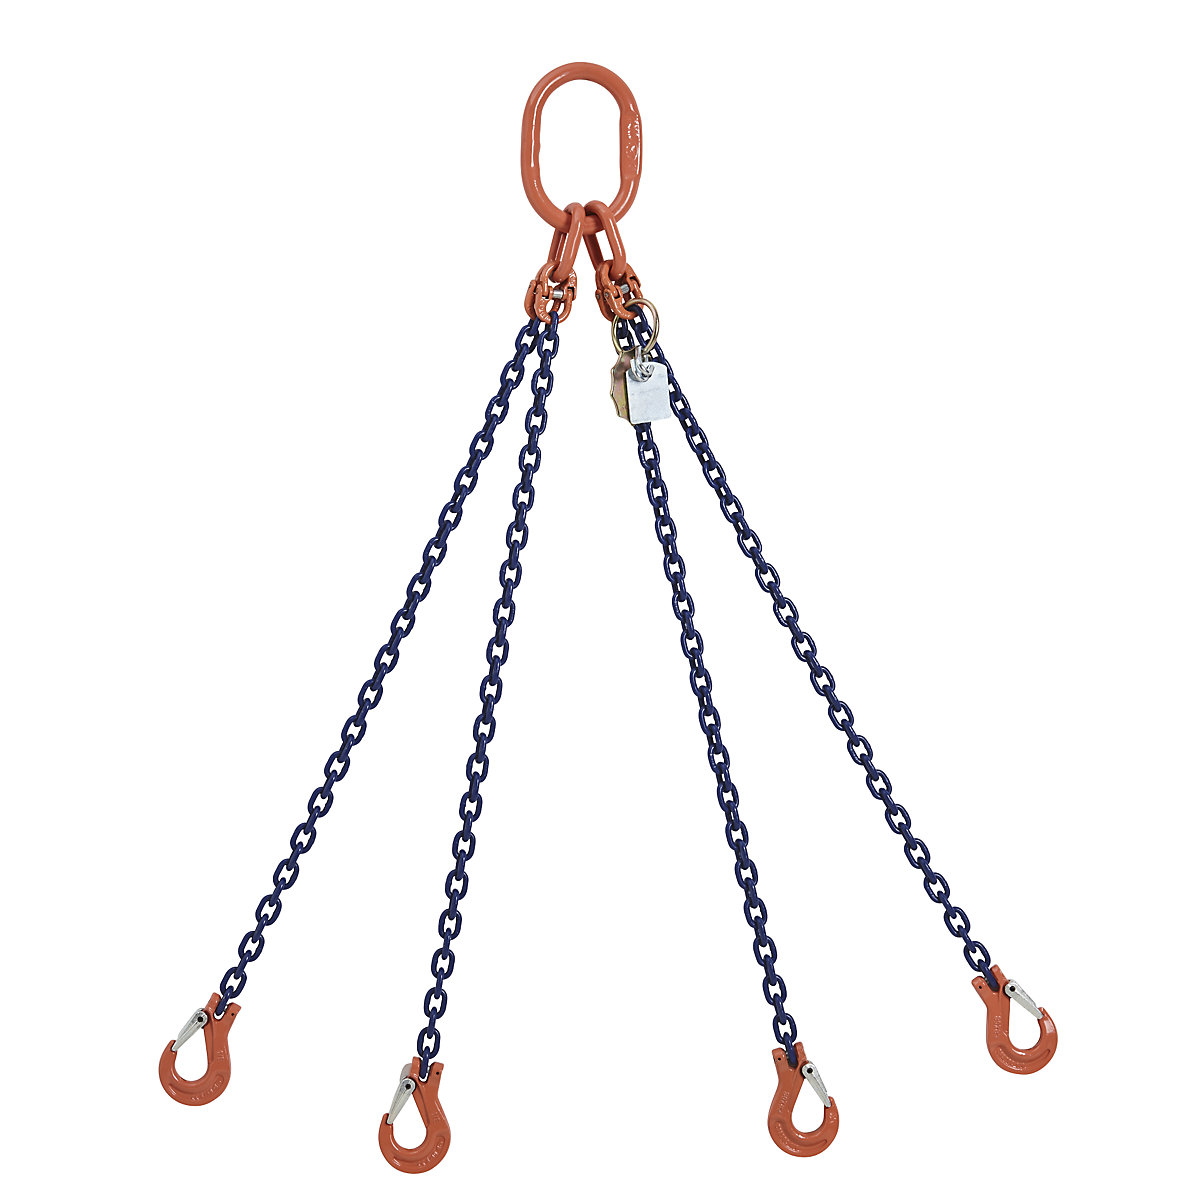 GK10 chain sling, four leg